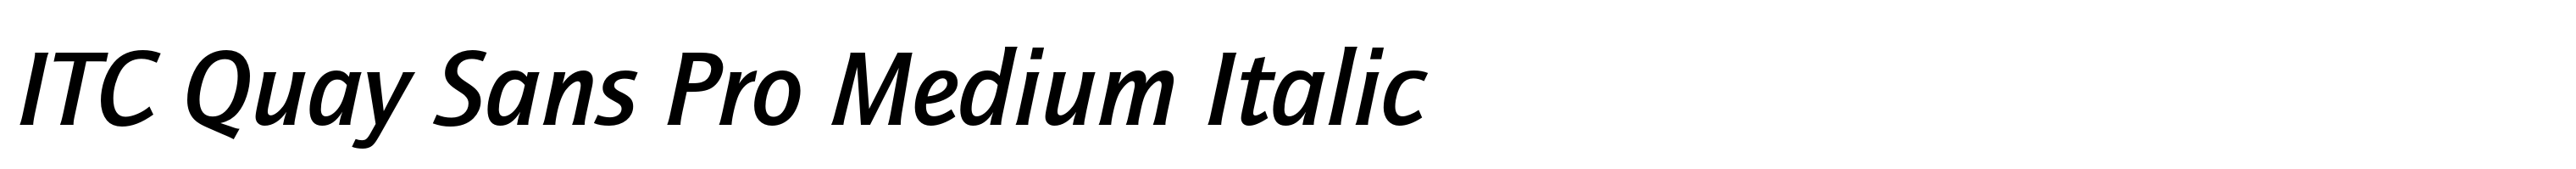 ITC Quay Sans Pro Medium Italic